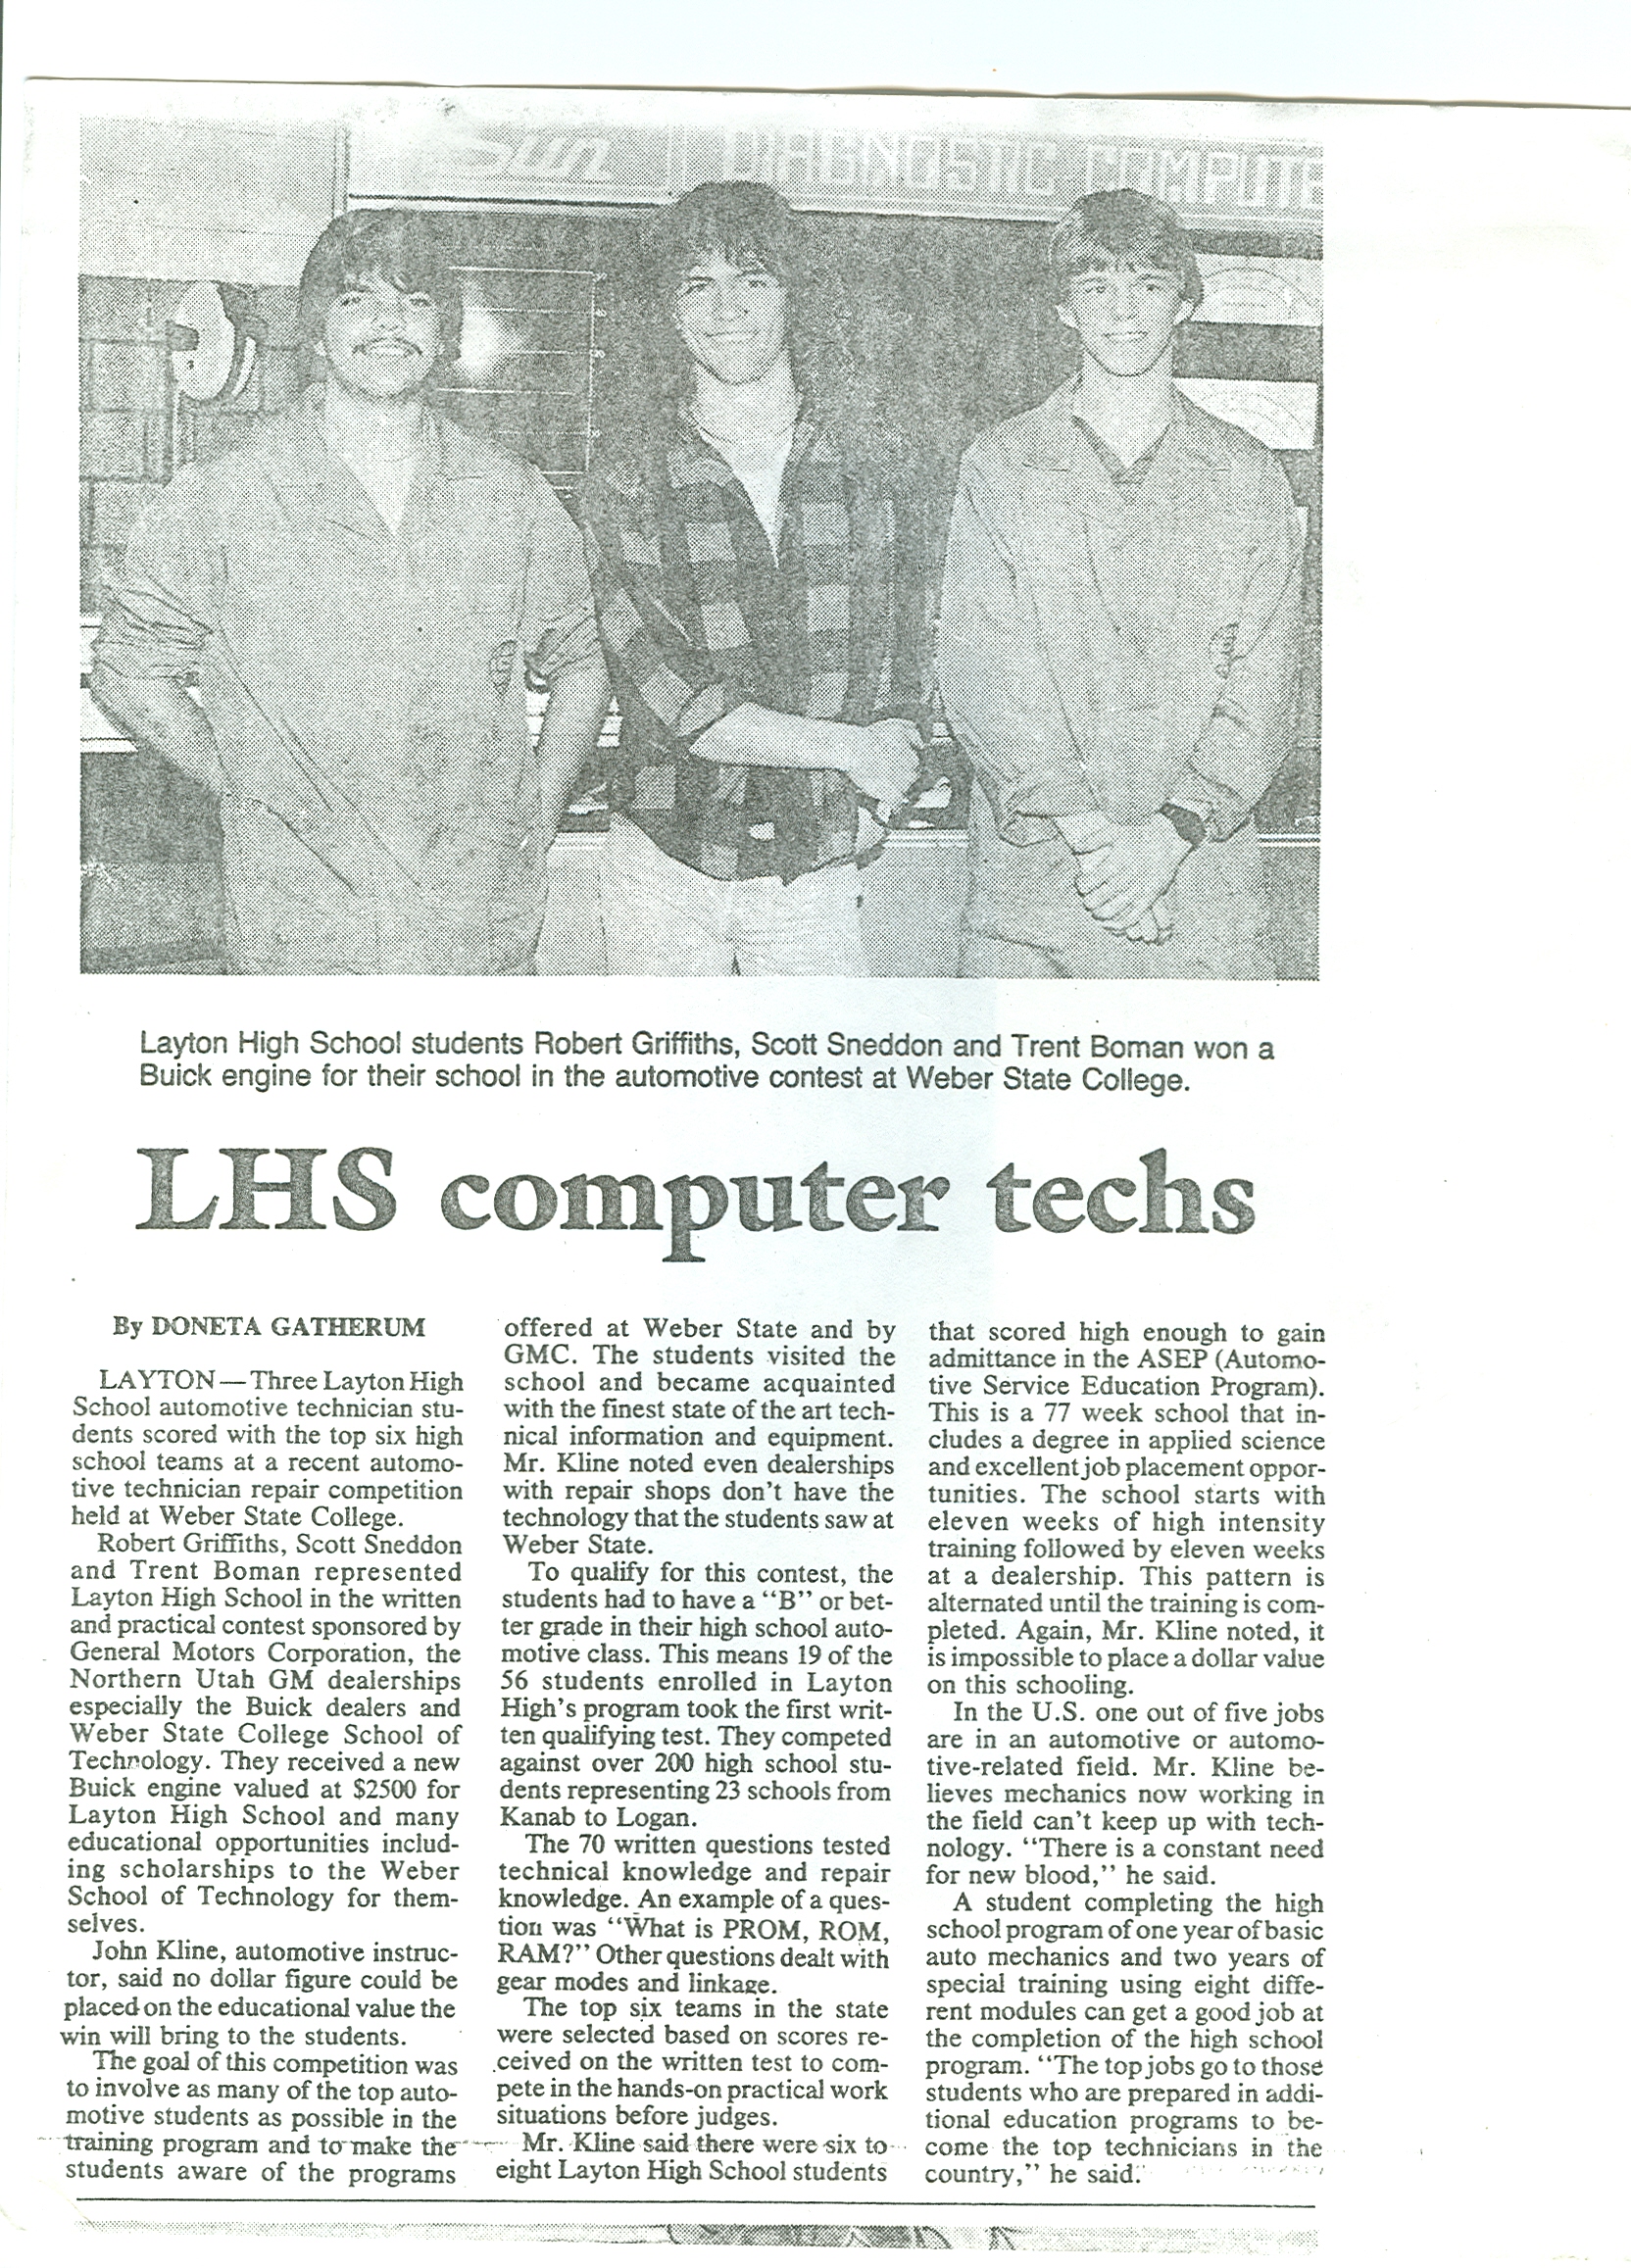 LHS computer techs newspaper article